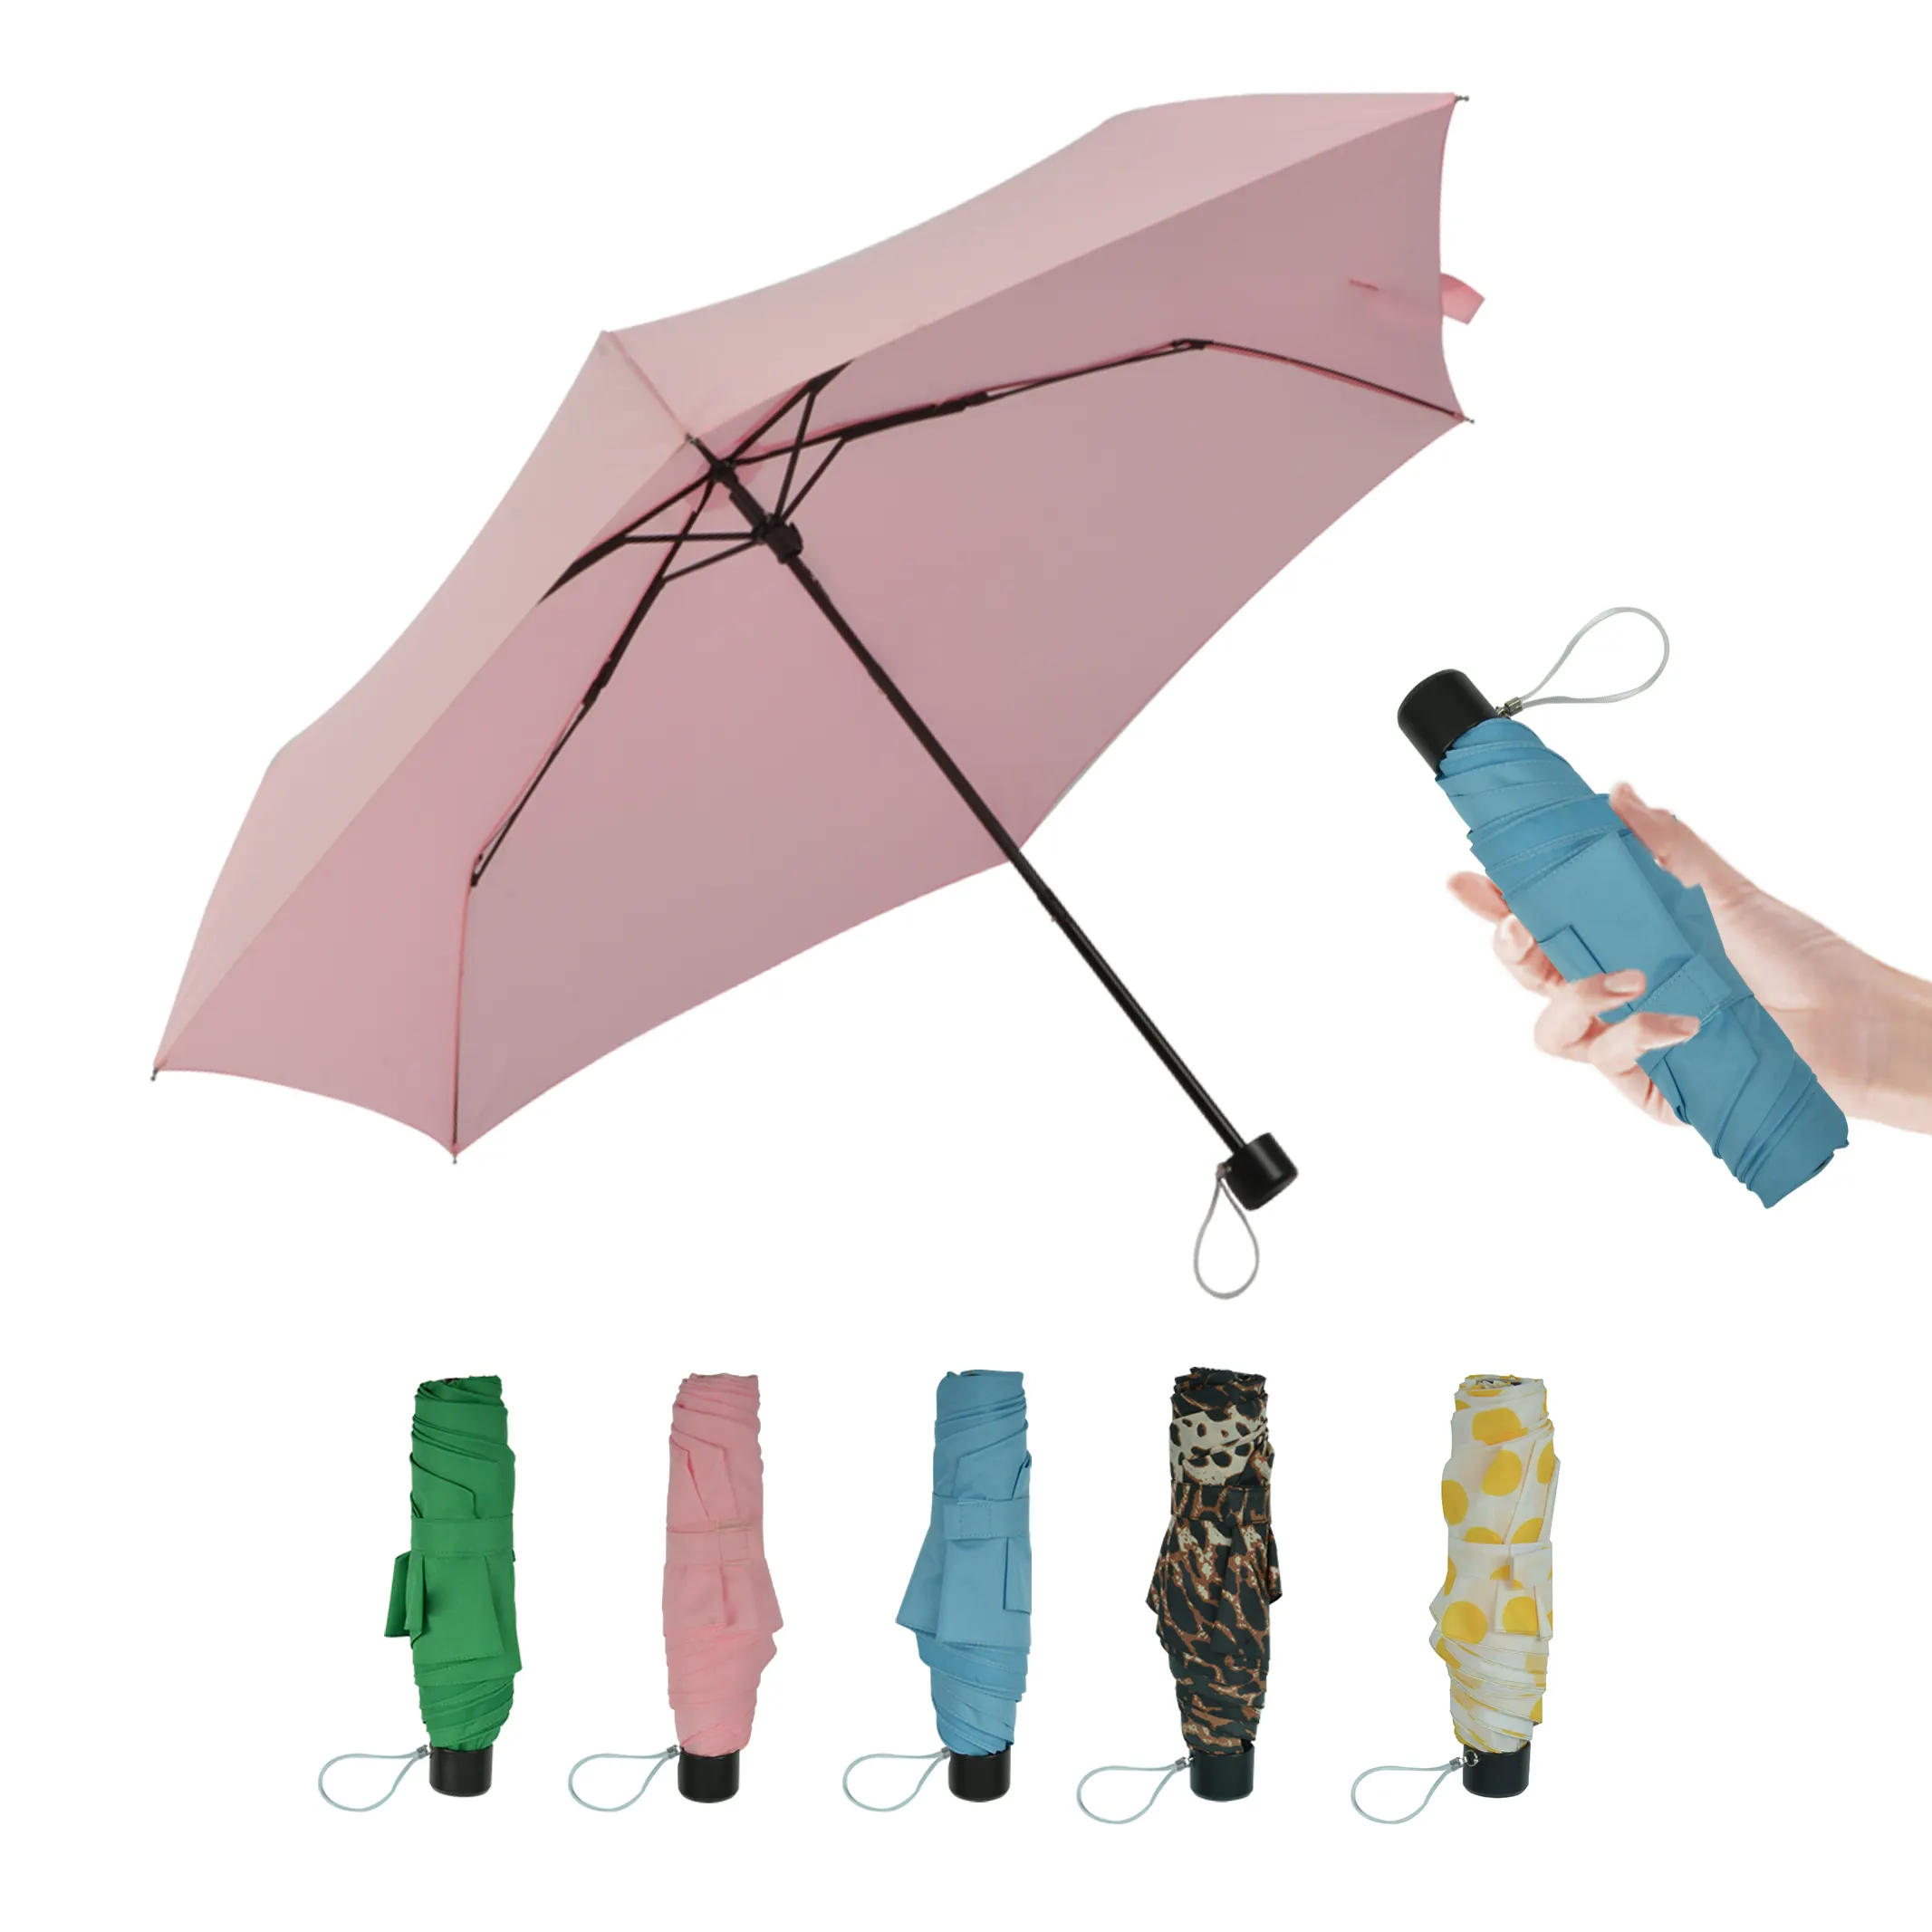 21 дюймов складной гексакоптер 3 раза маленький рисунок: Цветы зонтик для зонтик сувенир